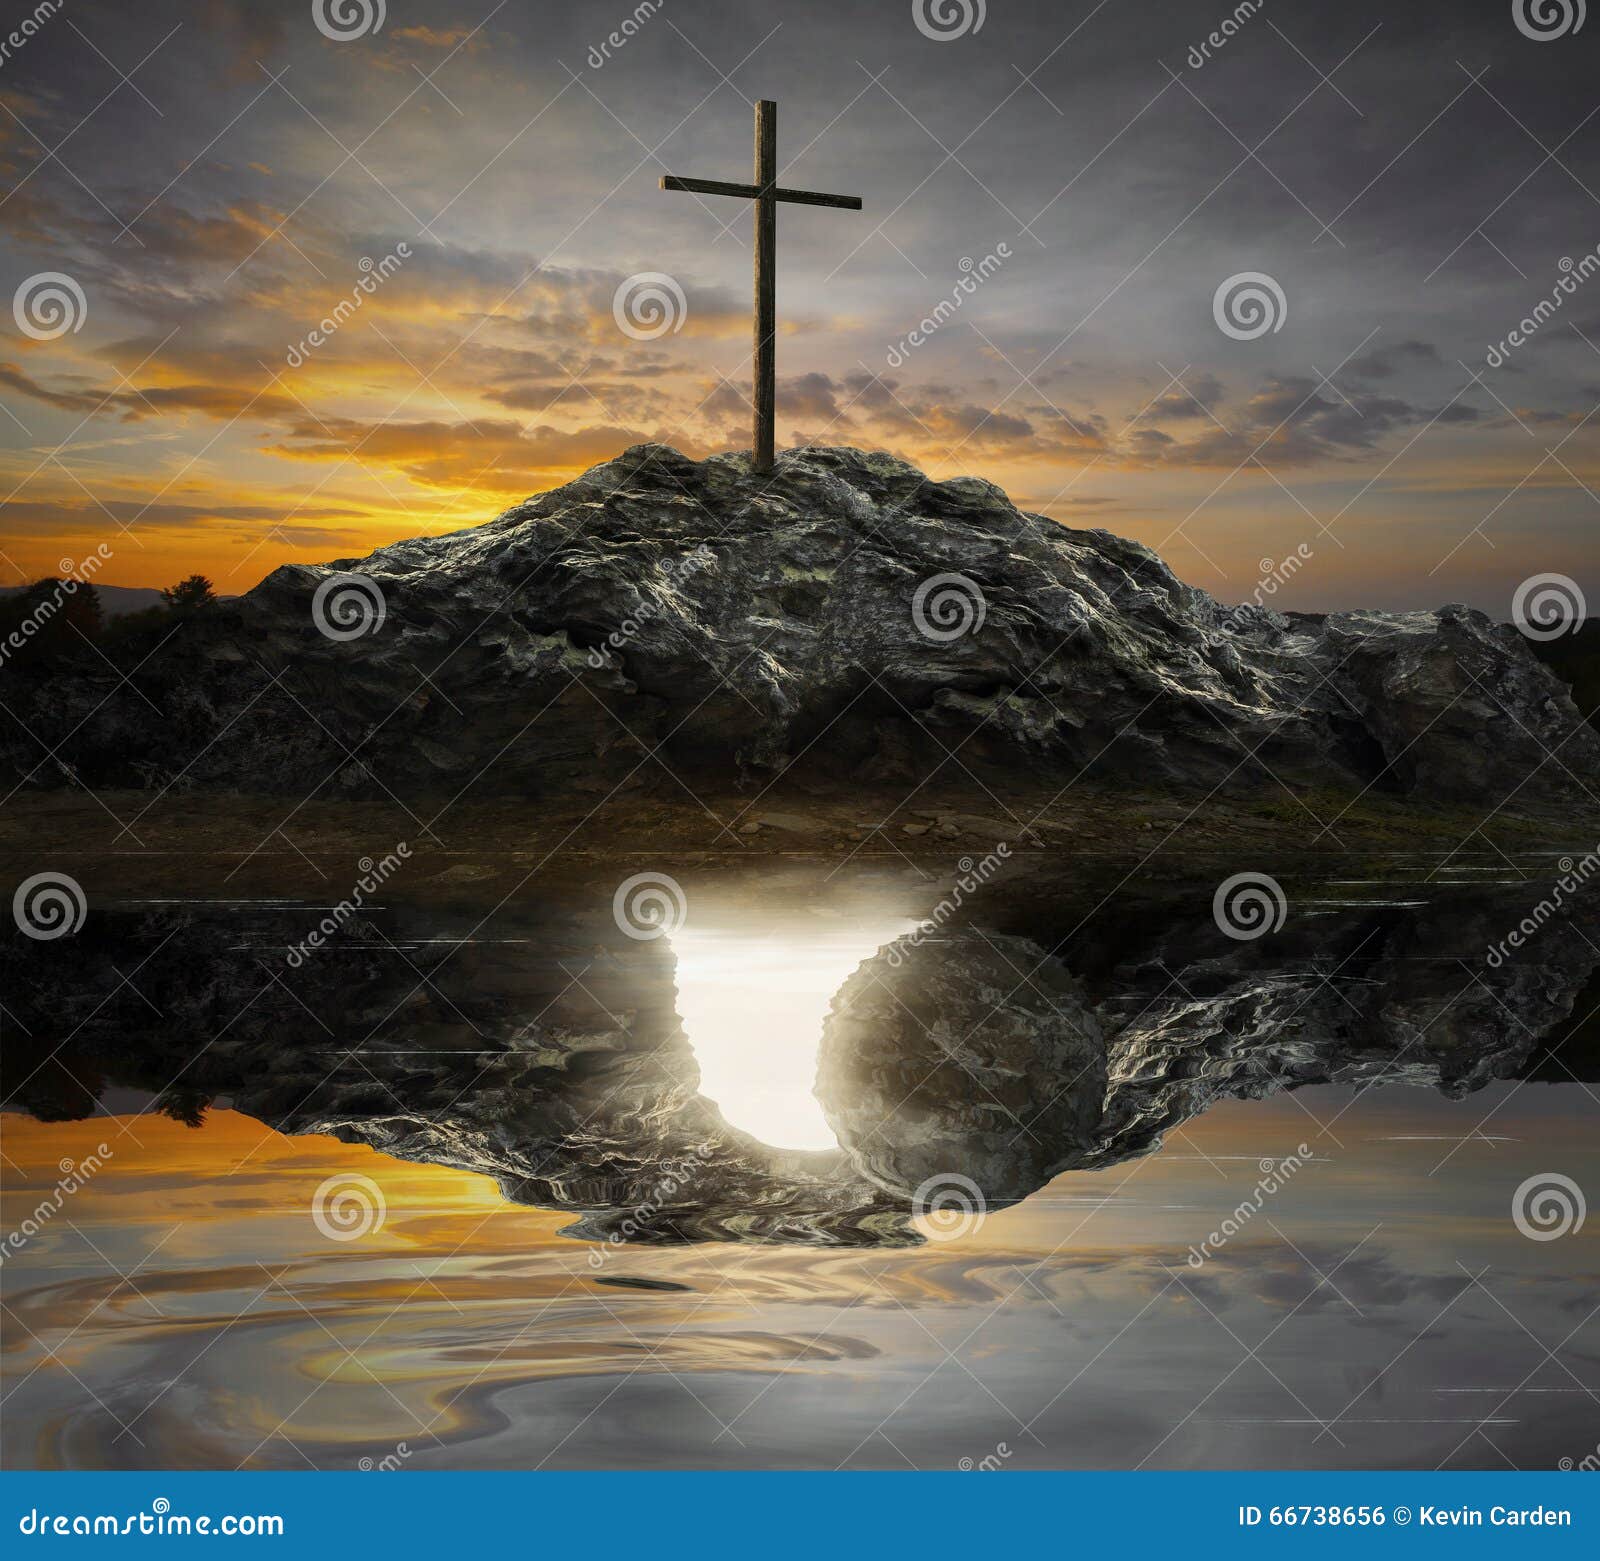 cross and empty tomb